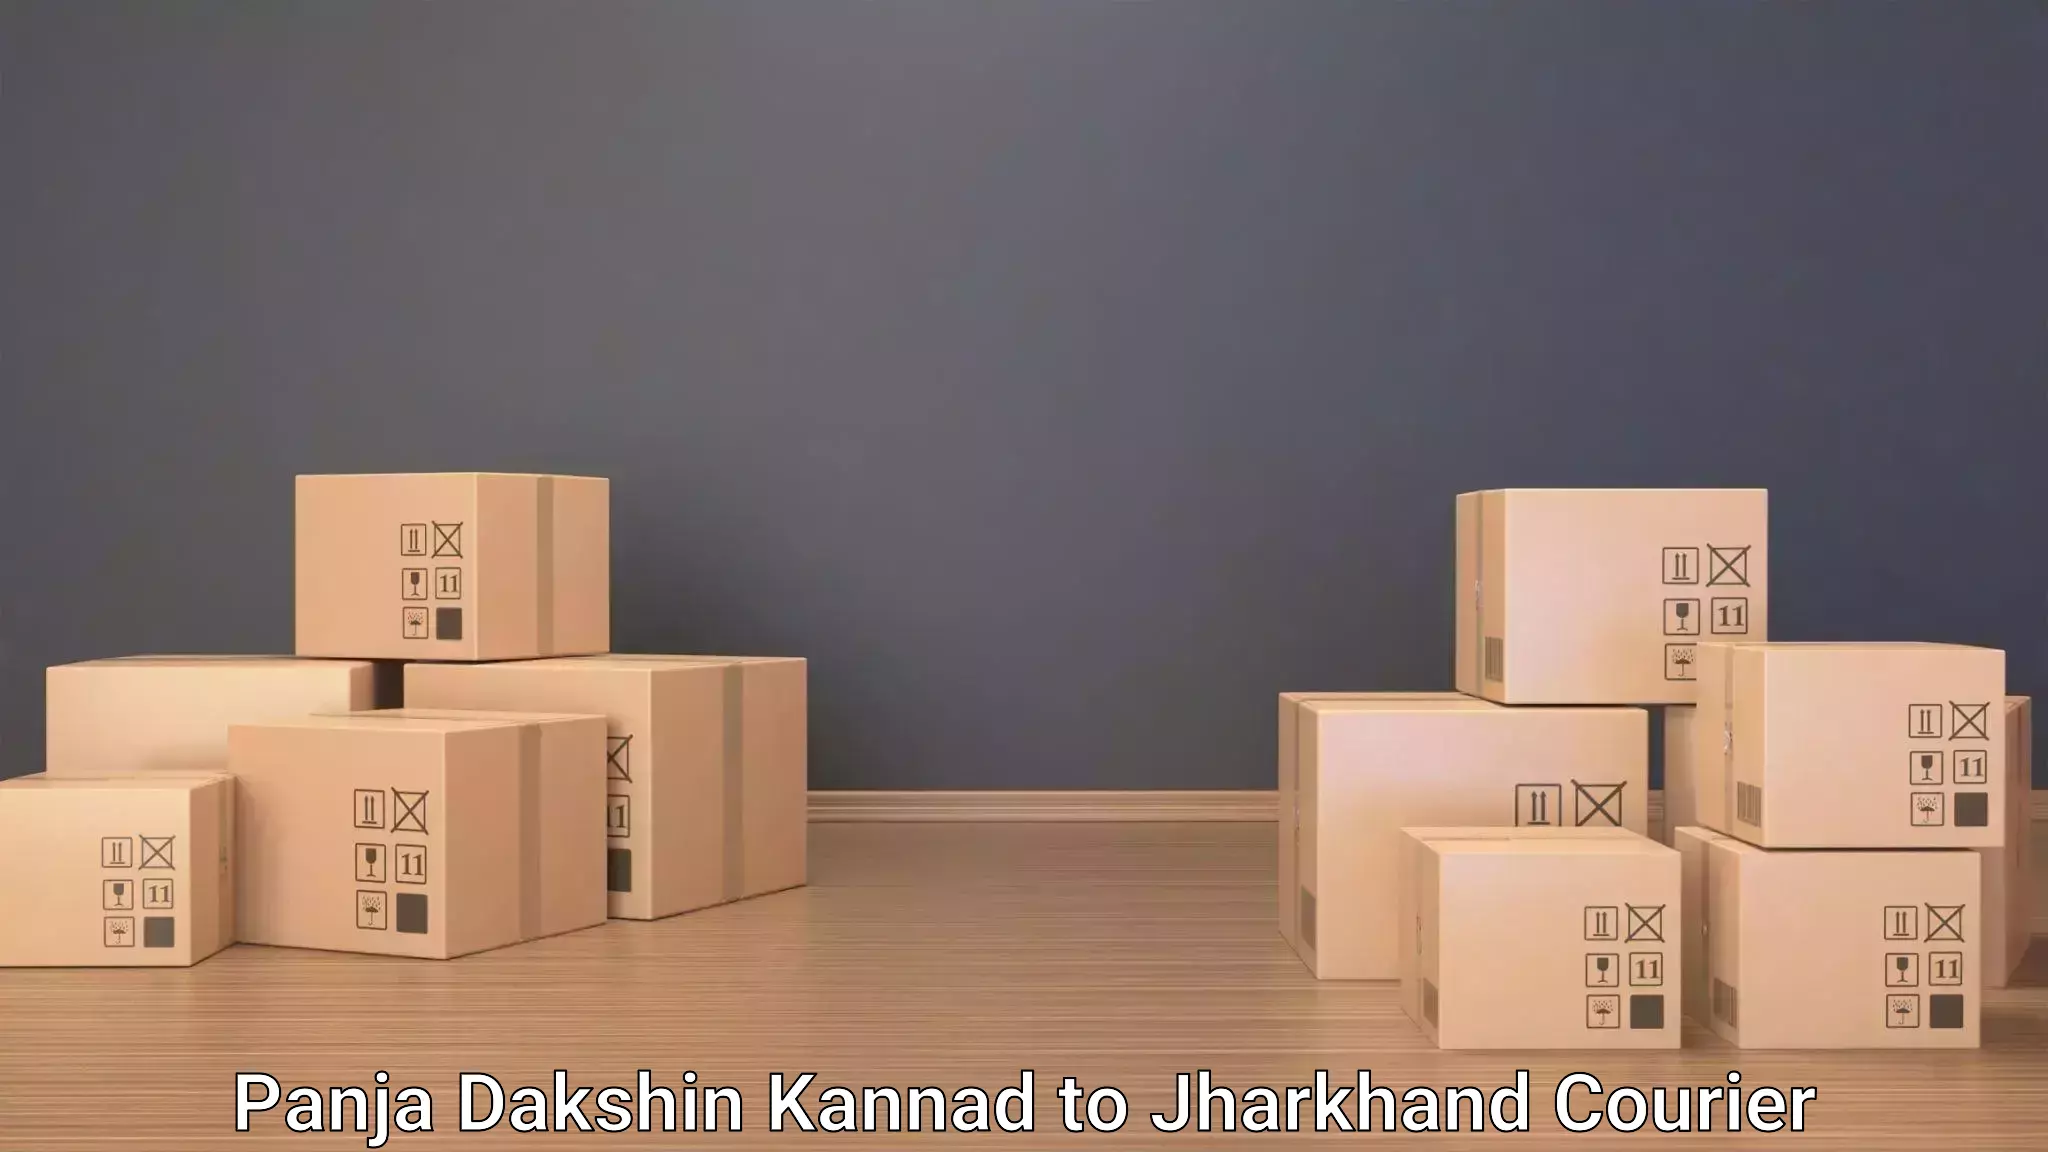 Luggage transport schedule Panja Dakshin Kannad to Jamshedpur